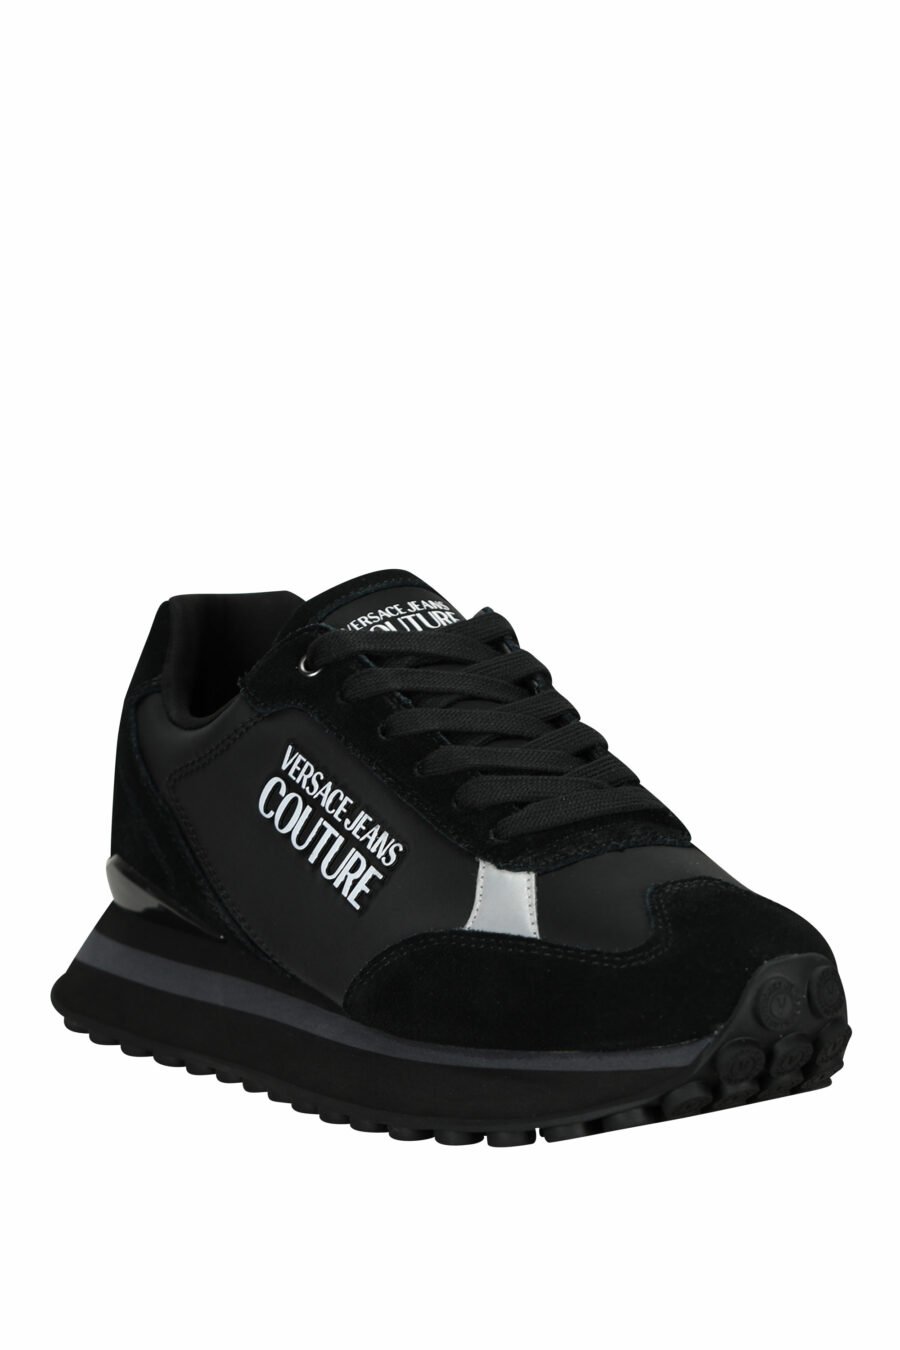 Zapatillas negras mix con minilogo blanco y suela negra - 8052019606362 1